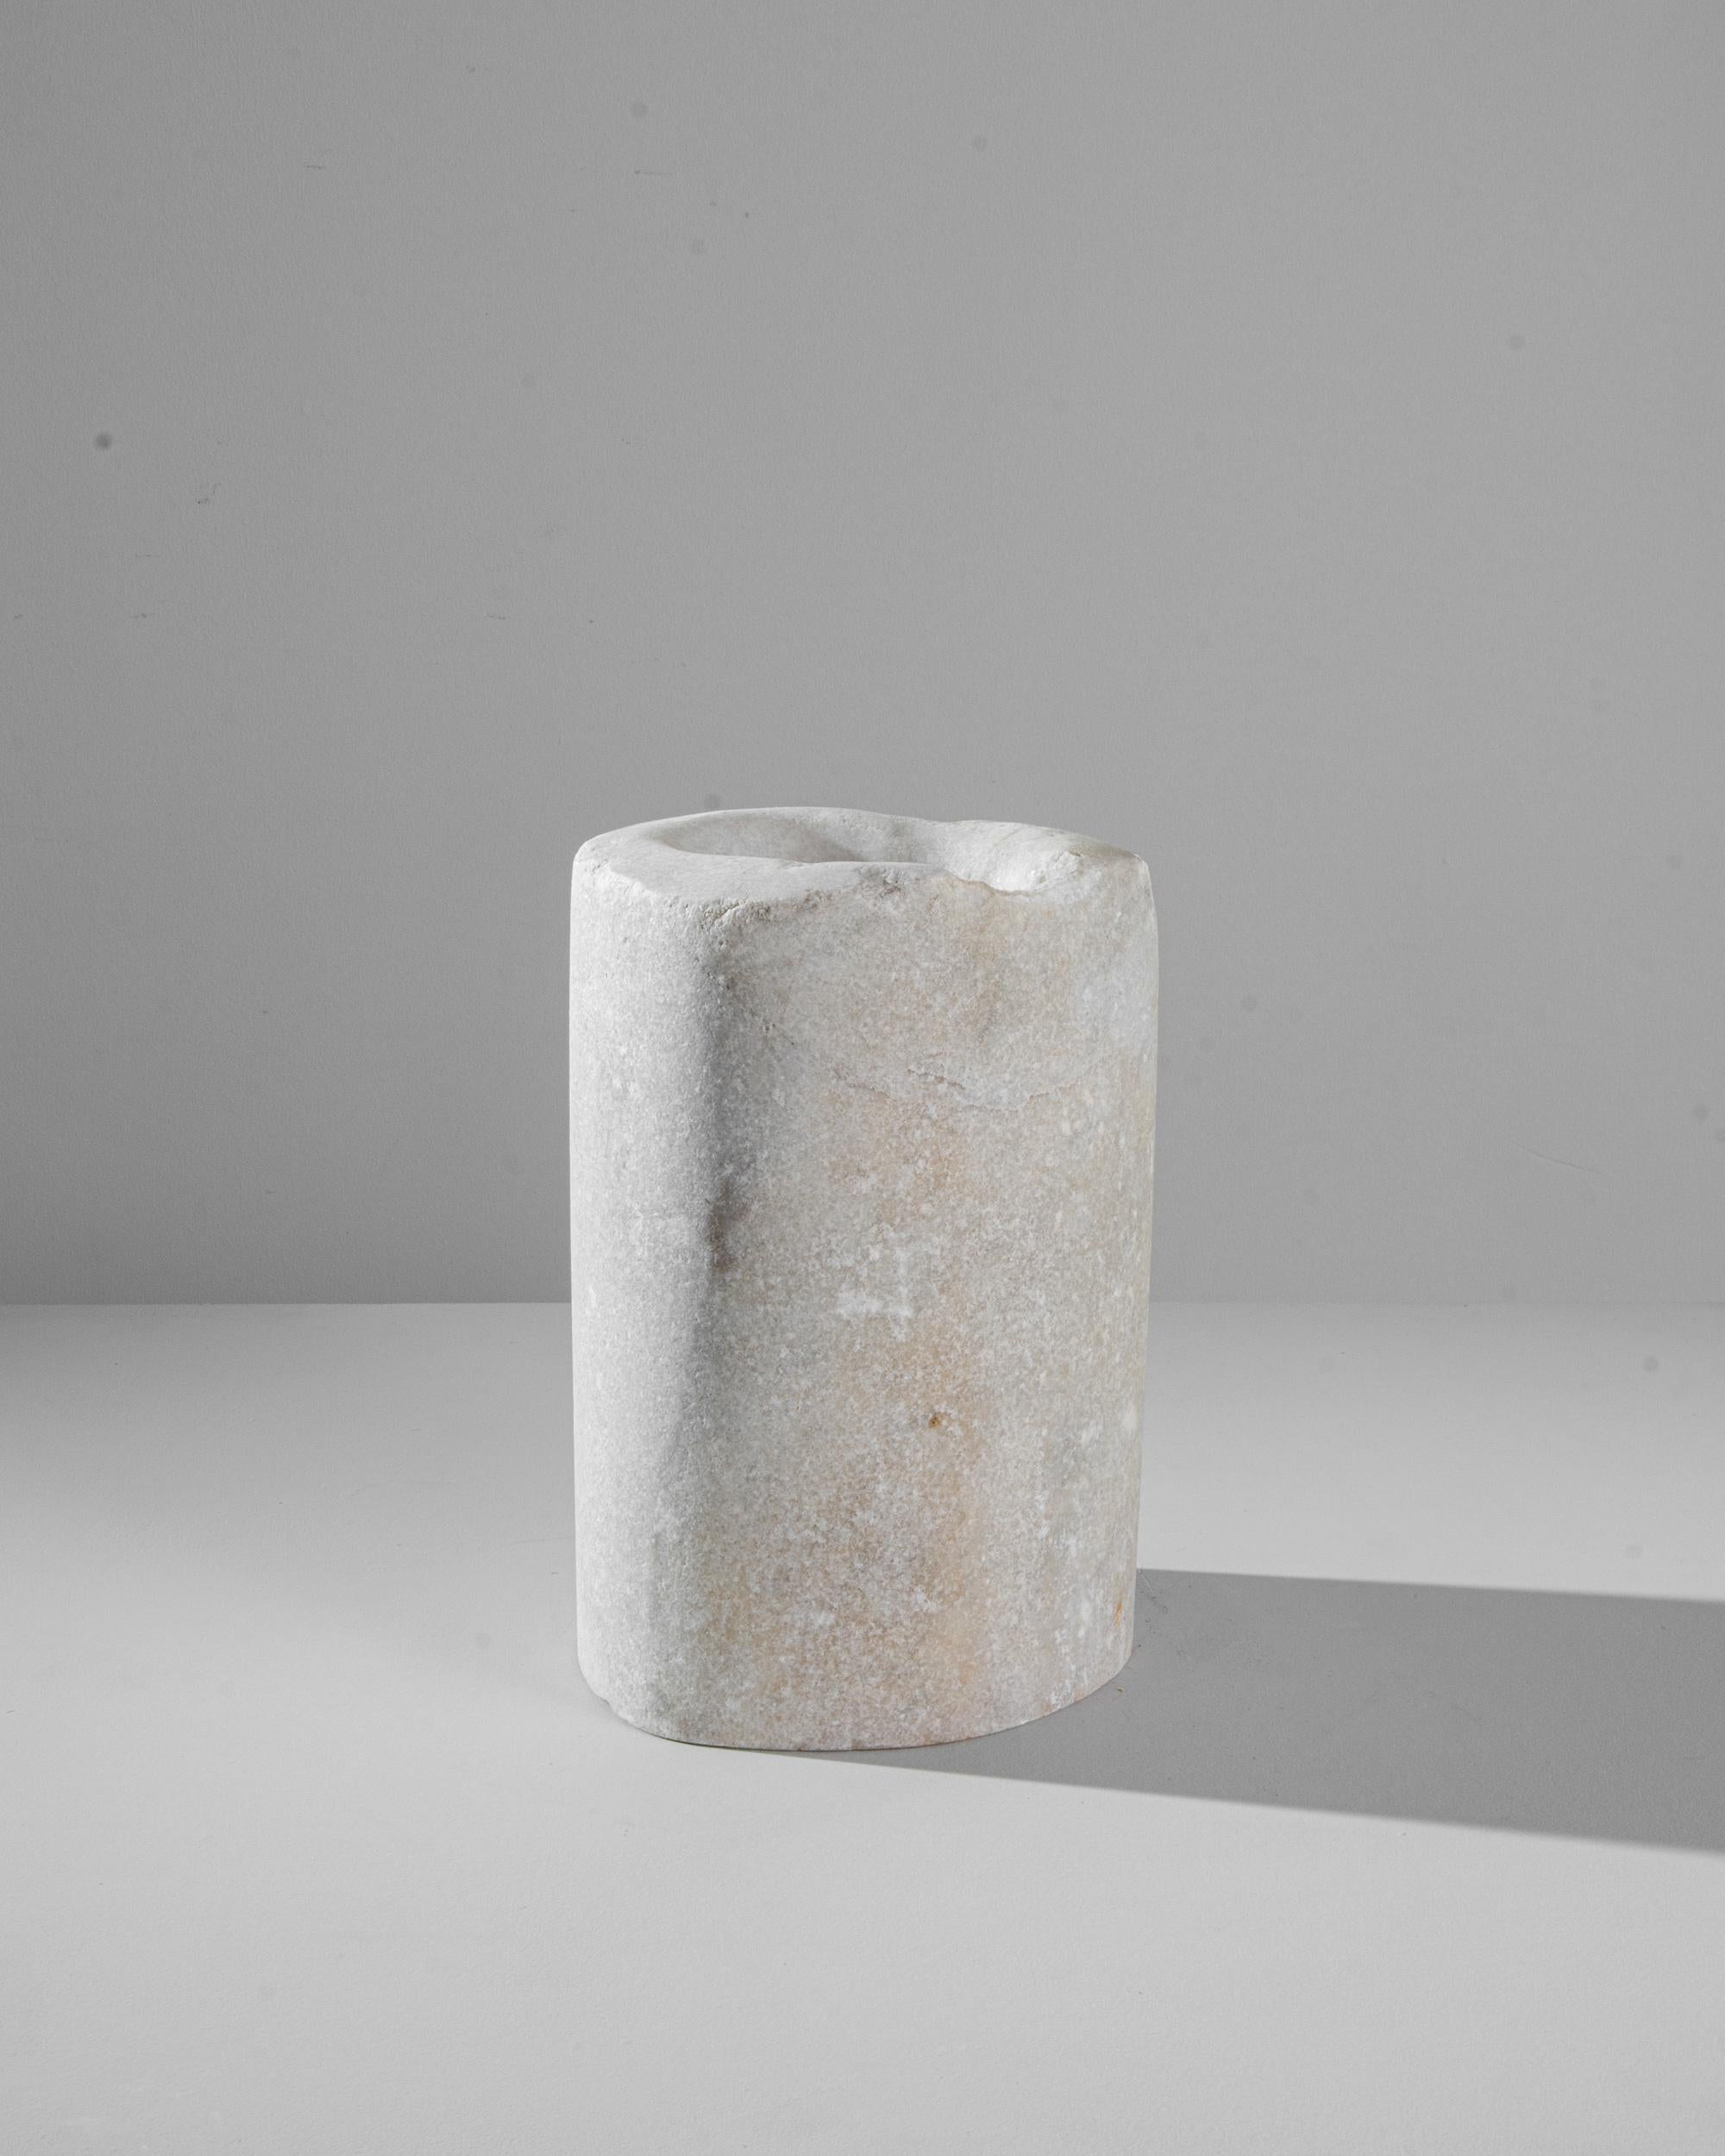 Laissez-vous séduire par le charme d'une époque révolue avec ce mortier en marbre européen du XIXe siècle. Sa forme unique, façonnée par le temps, raconte l'histoire des siècles passés. Fabriqué à partir de marbre durable, ce mortier ne témoigne pas